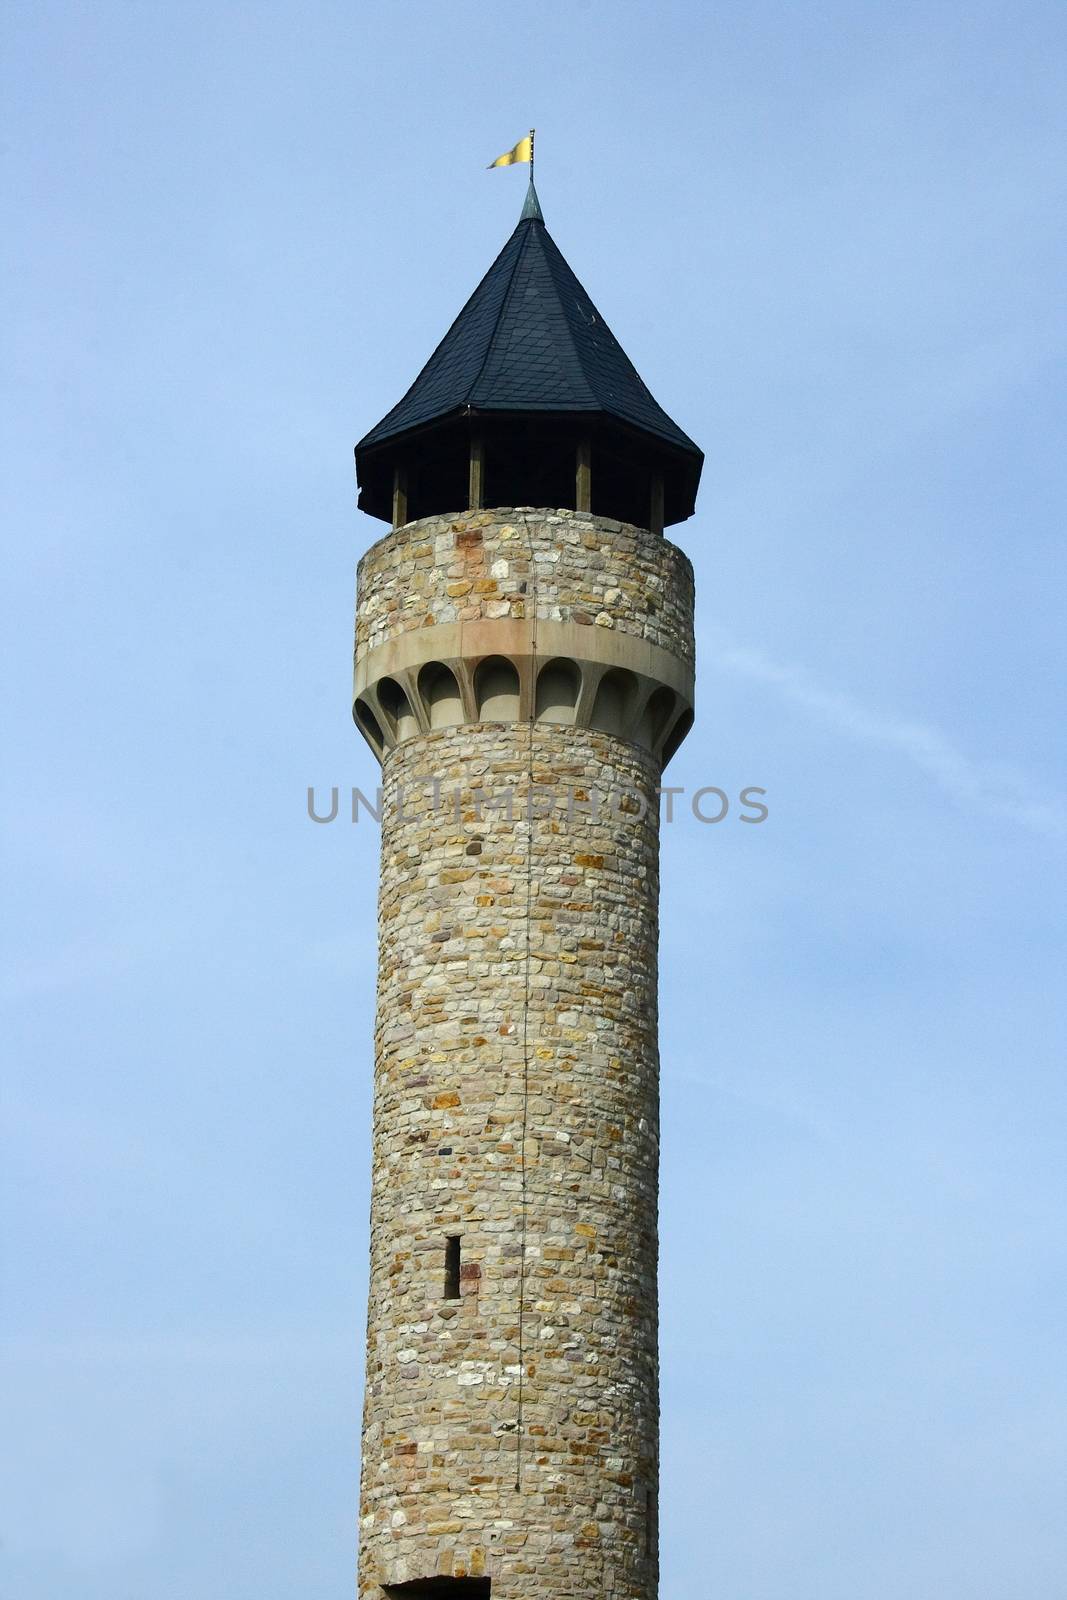 The Wartburg Castle tower in Freimersheim, Germany     der Wartburgturm bei Freimersheim,Deutschland by hadot